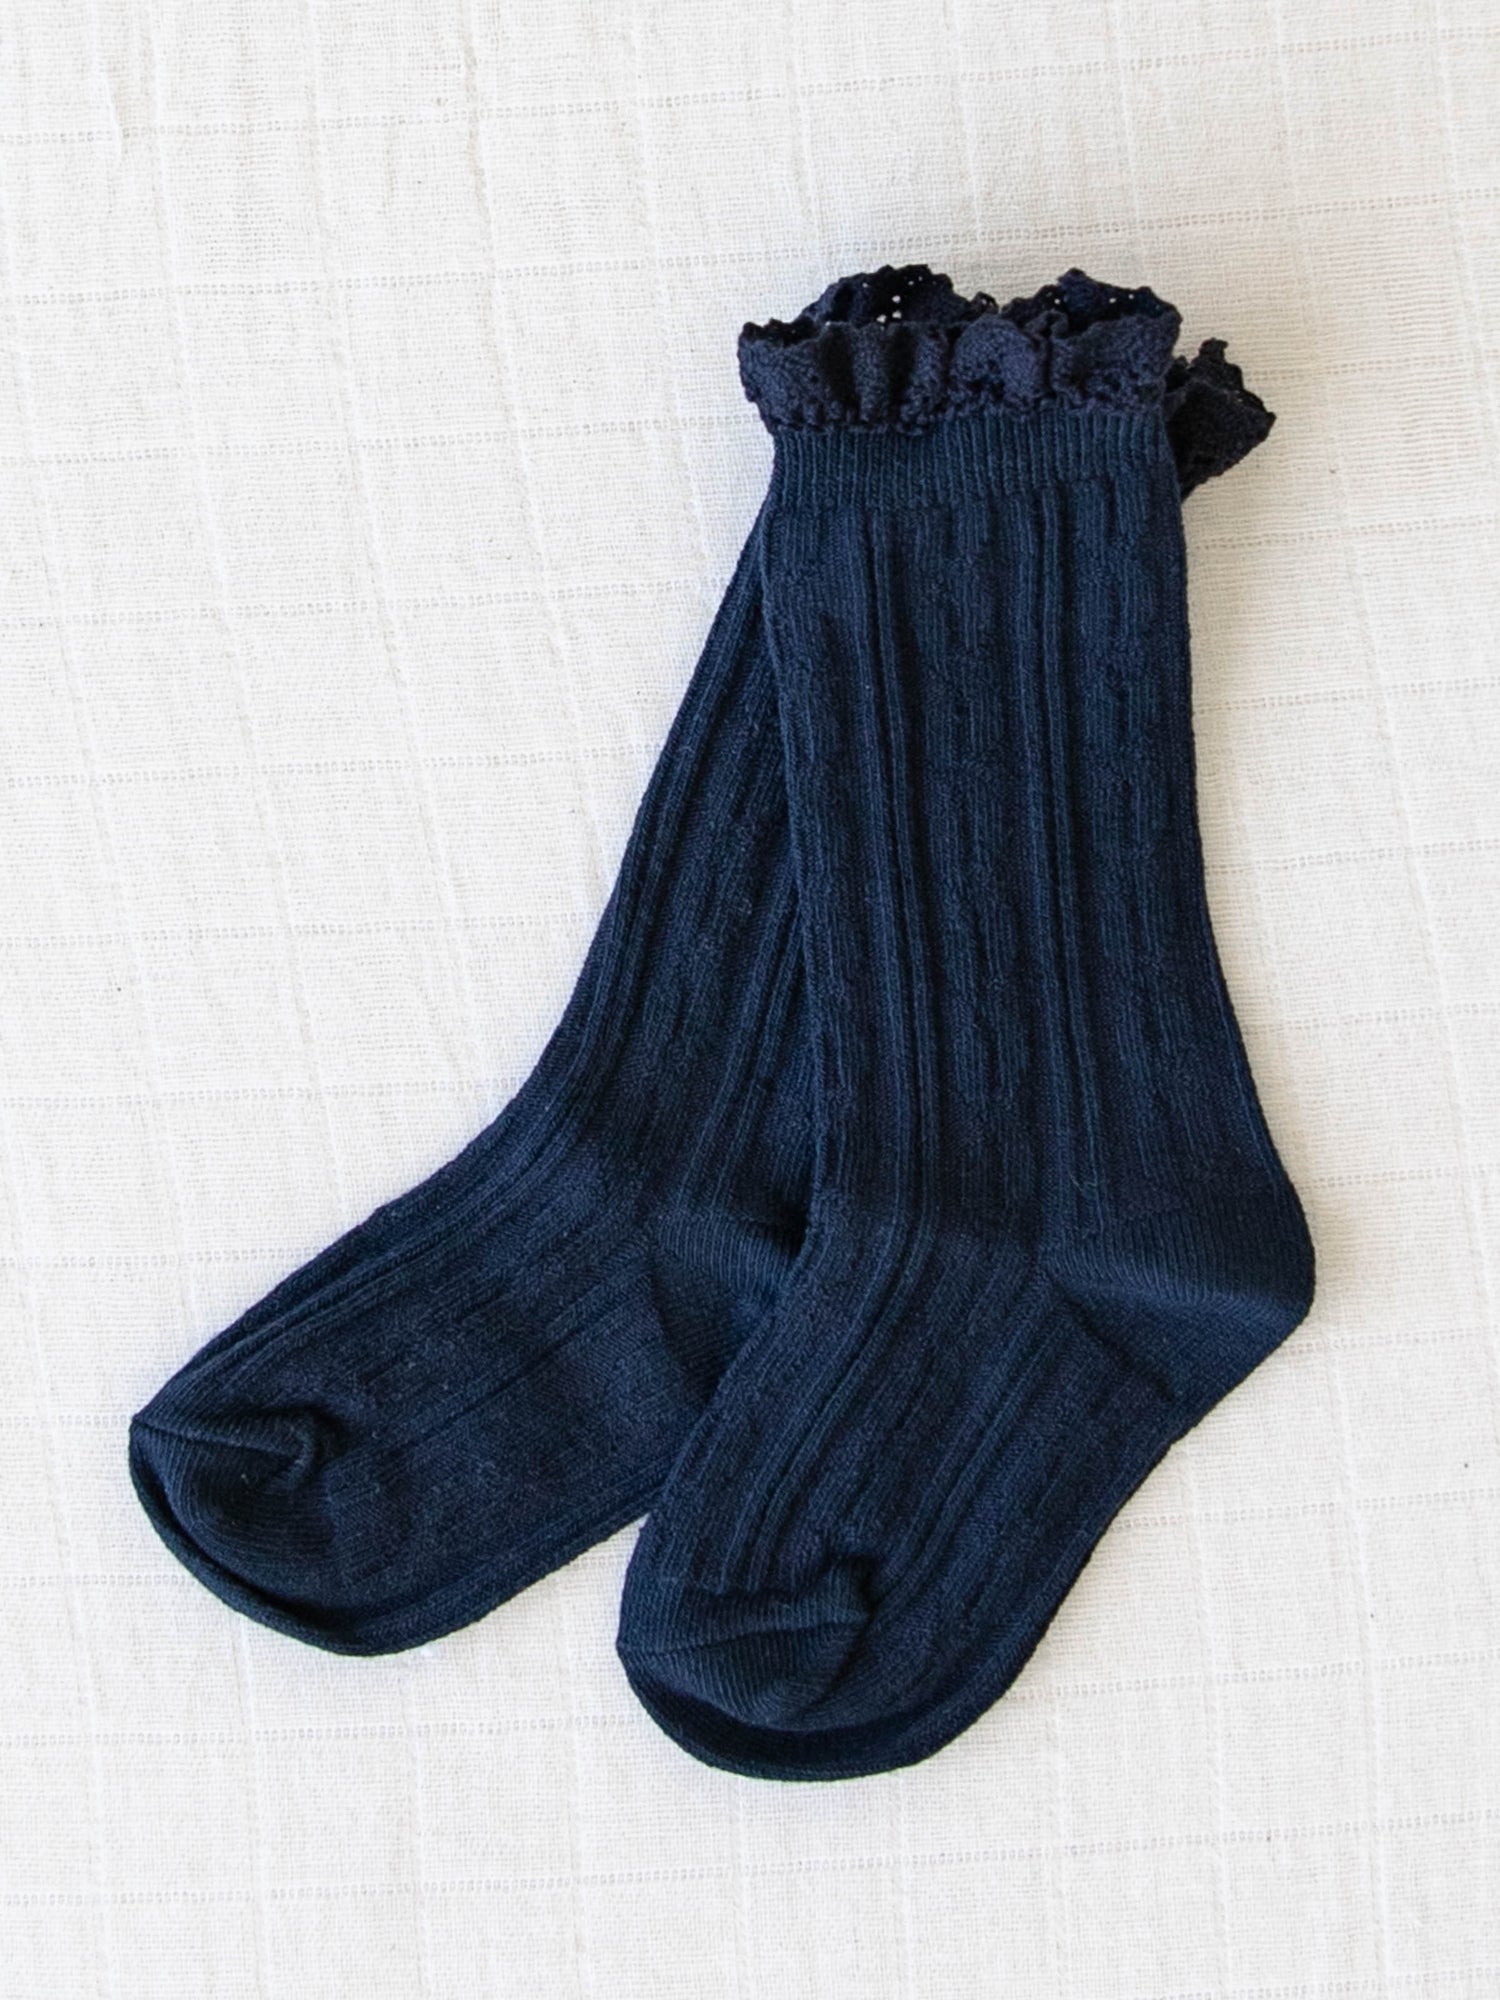 Kids Refusing to Wear Socks? – Friday Sock Co.